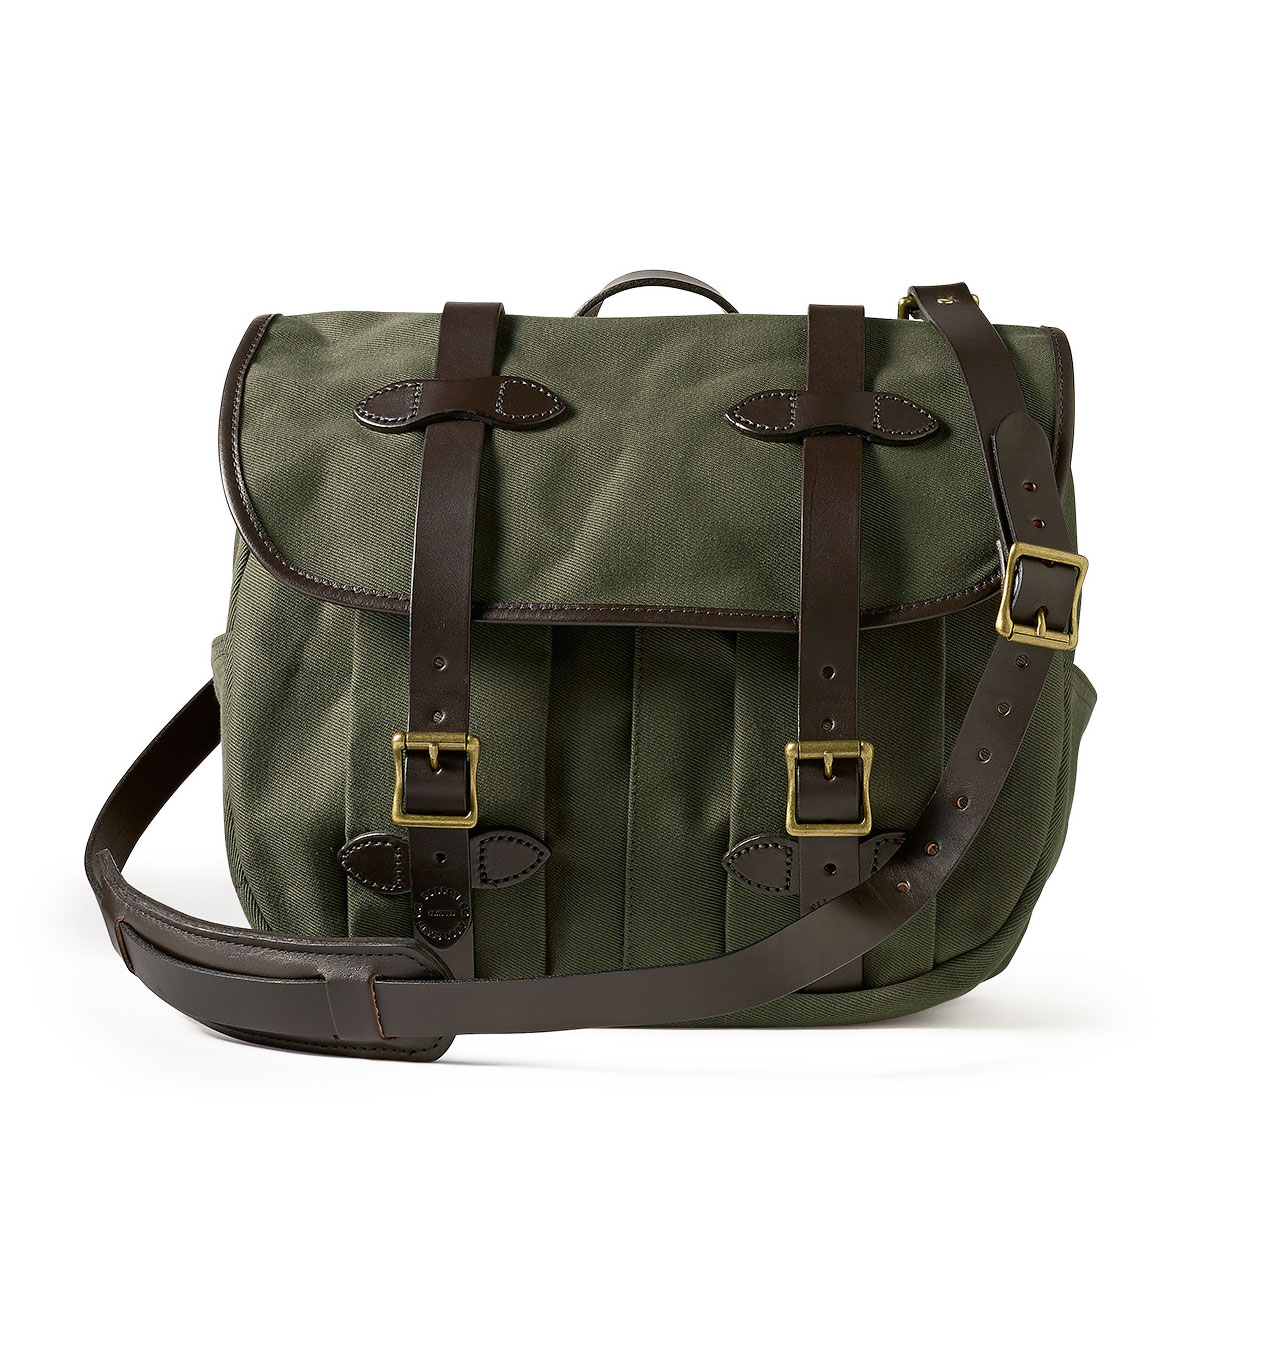 Filson - Field Bag Medium - Otter Green